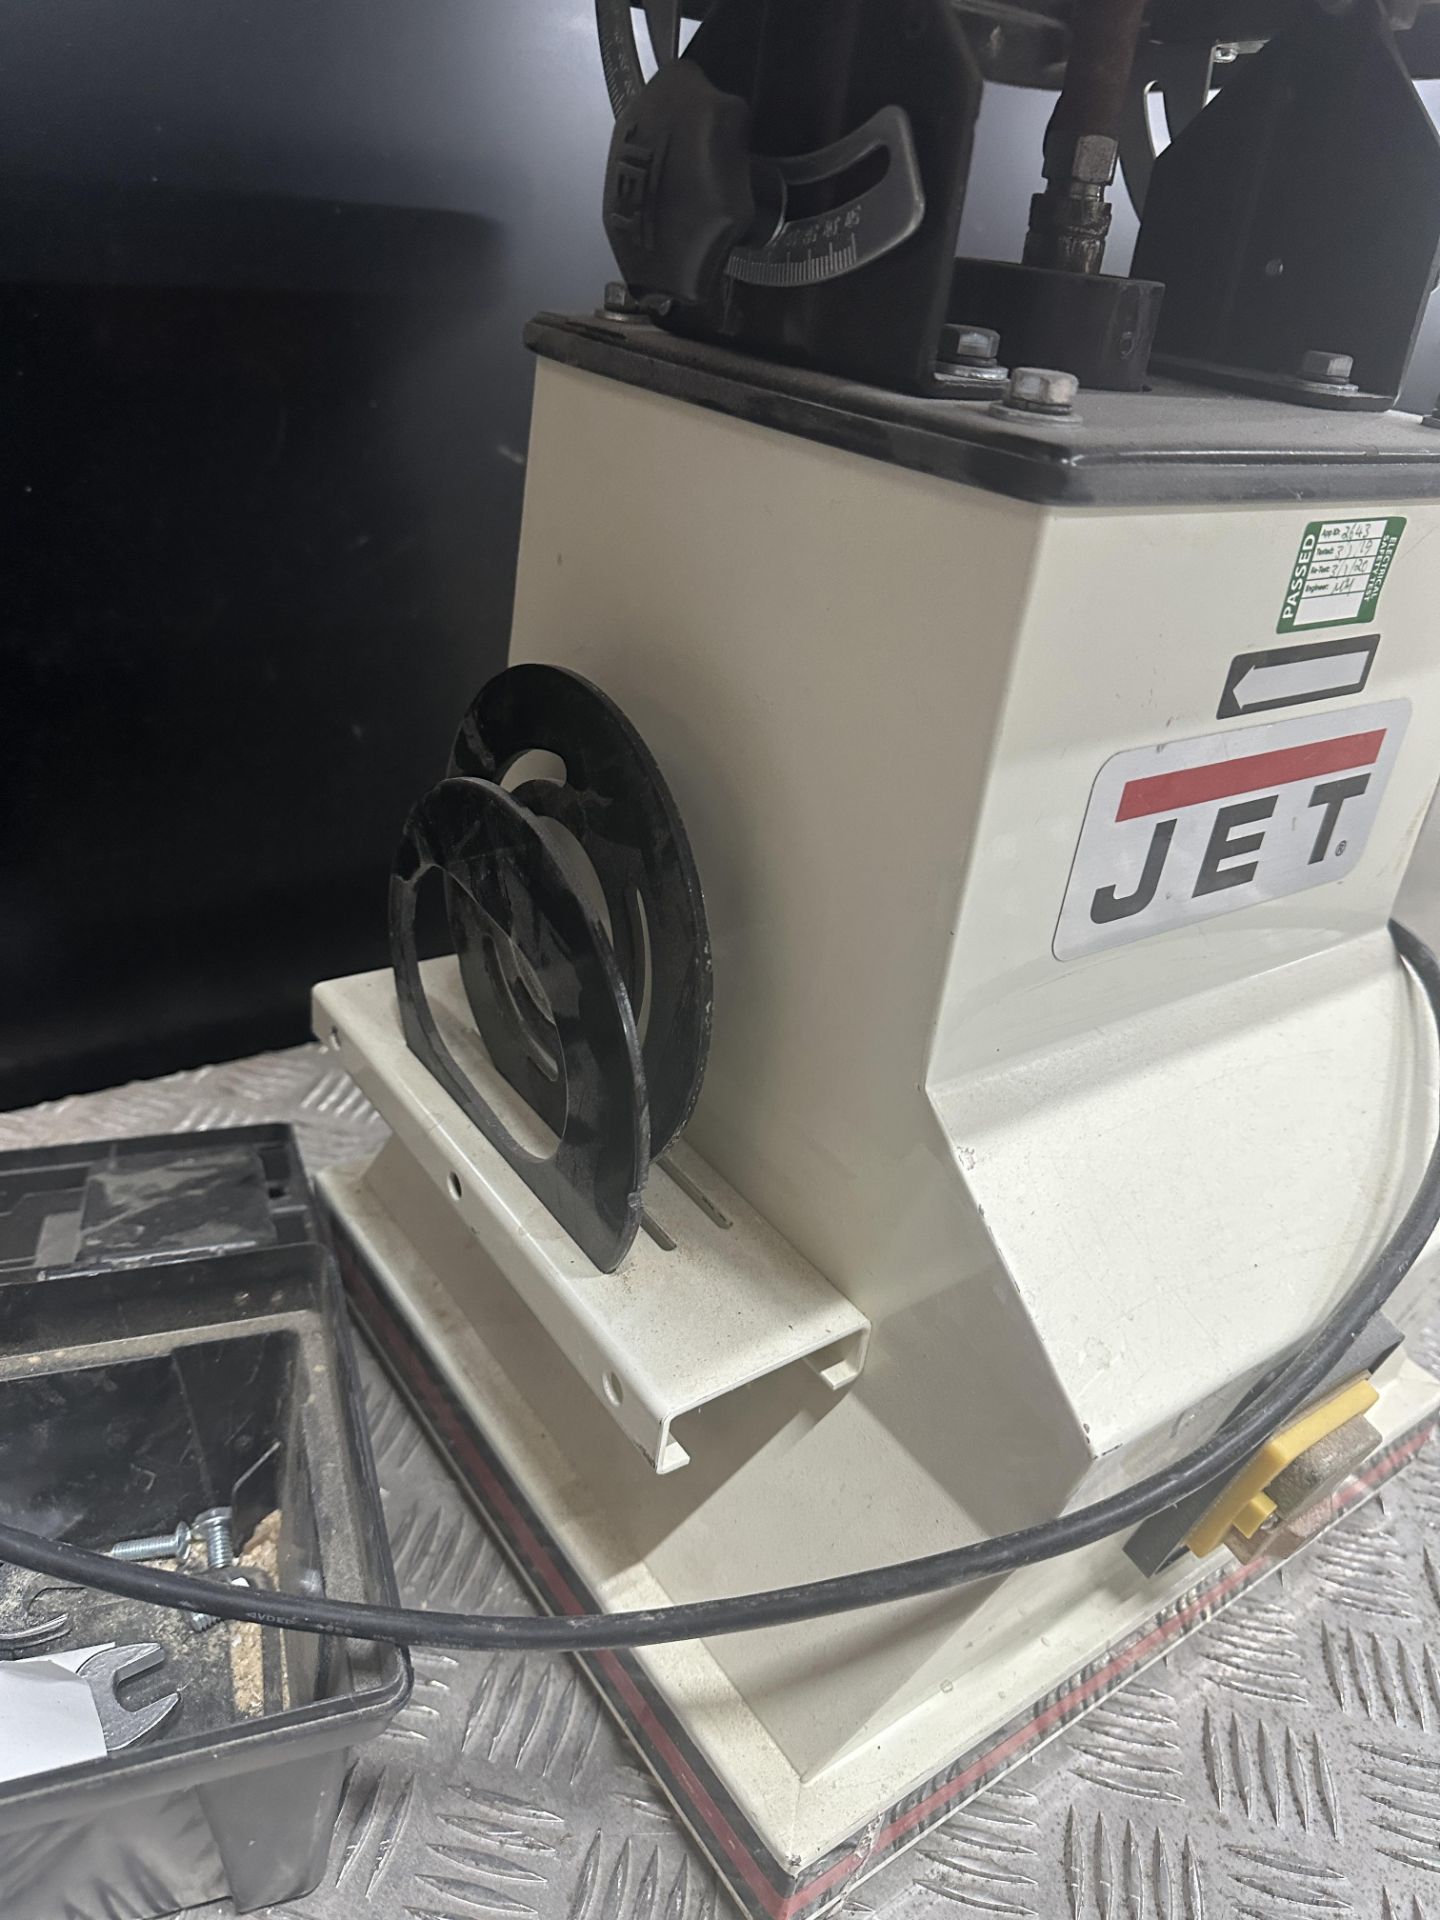 Jet JB0S 5 Oscillating spindle sander - Image 5 of 5